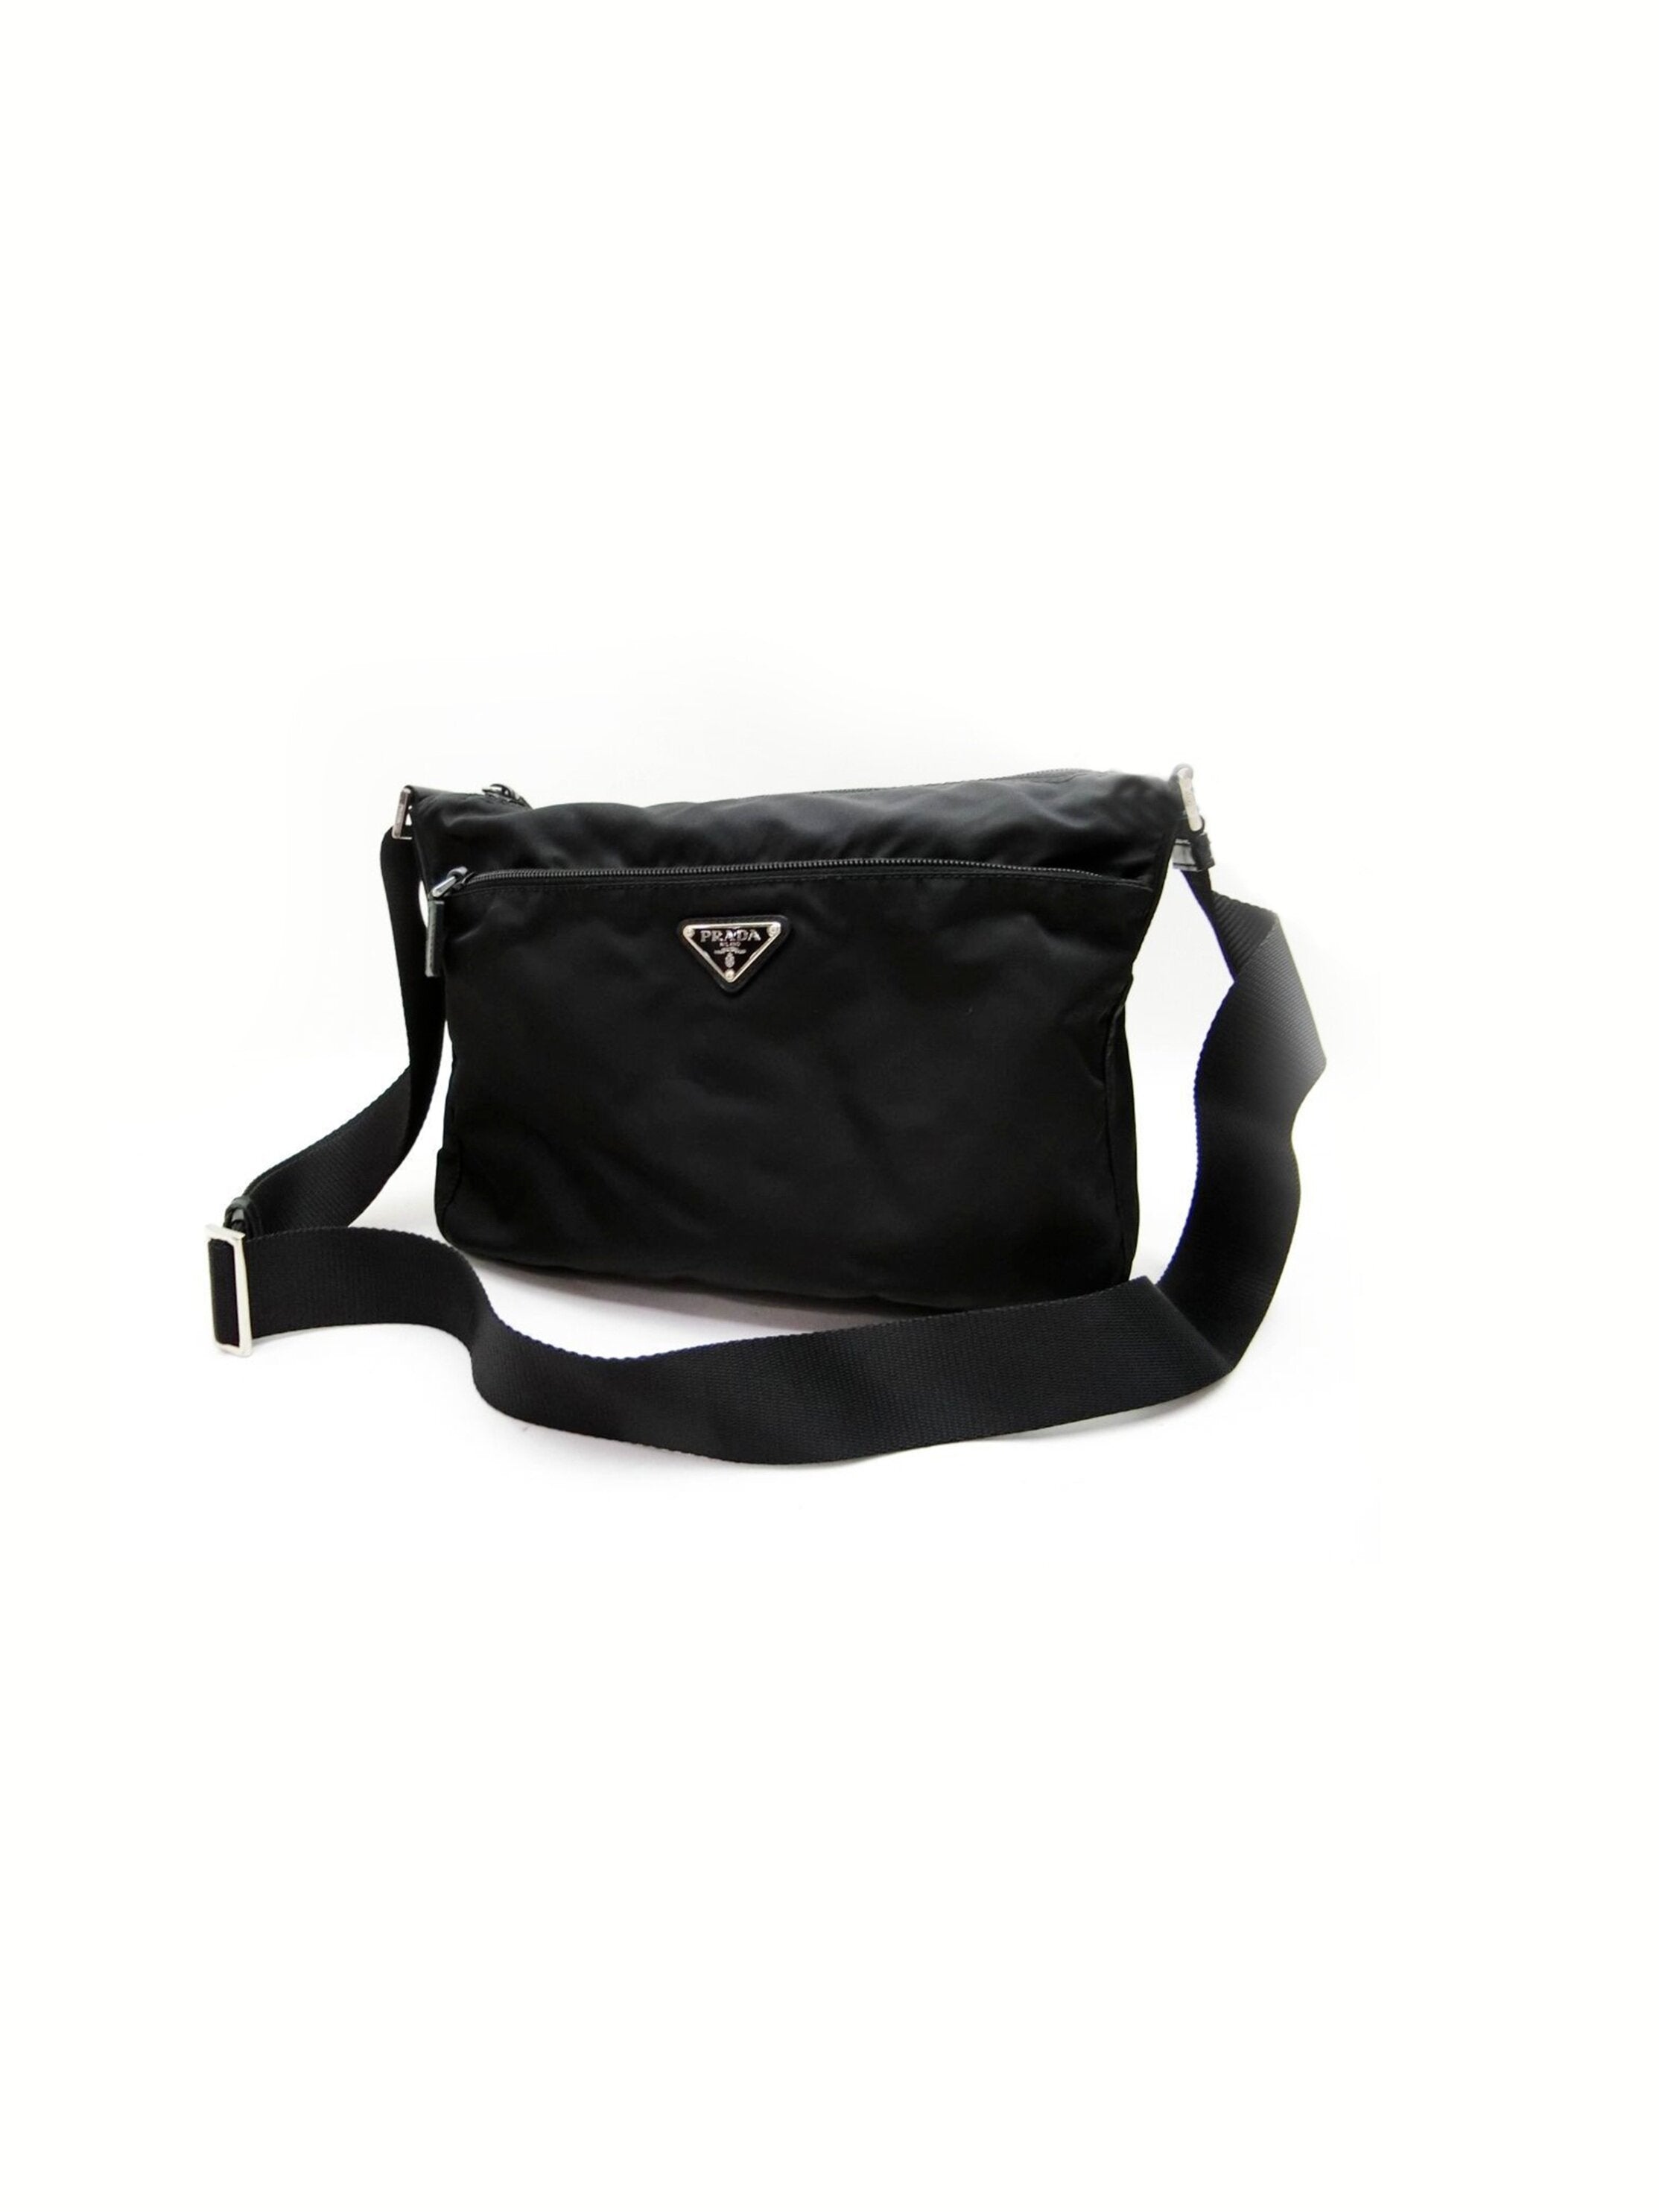 Prada 2000s Black Nylon Handbag